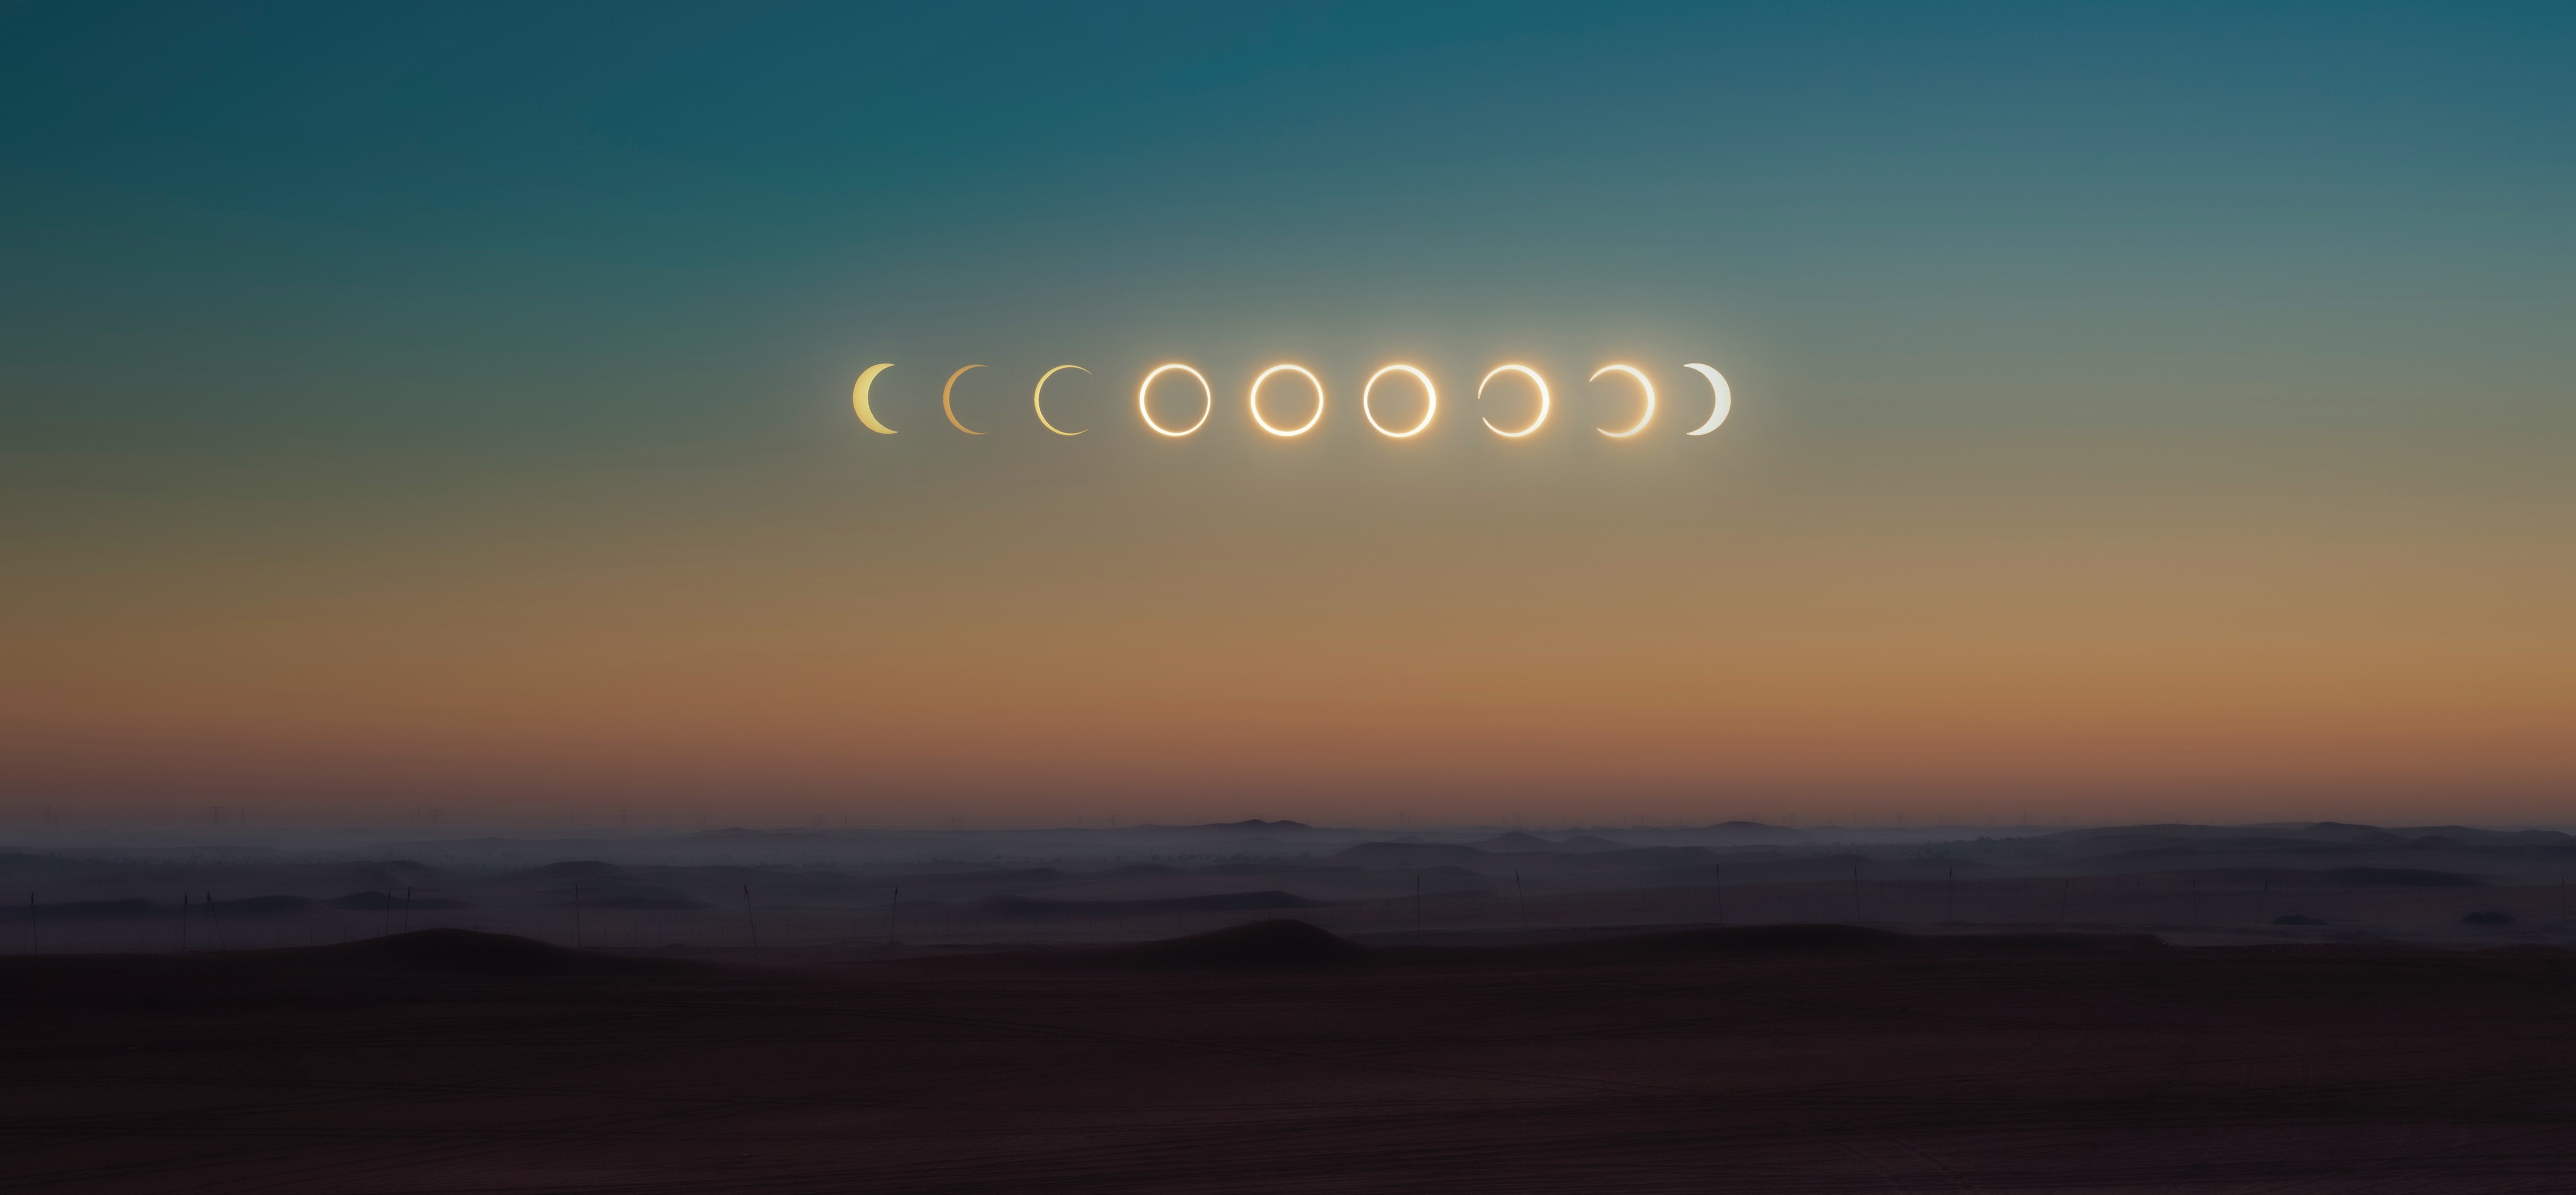 Céu do mês: eclipse solar e solstício de inverno são destaques de junho. Acima: Composição mostra fases de eclipse solar anular ocorrido em 26 de dezembro de 2019, visto dos Emirados Árabes Unidos. (Foto: Abed Ismail/Unsplash)